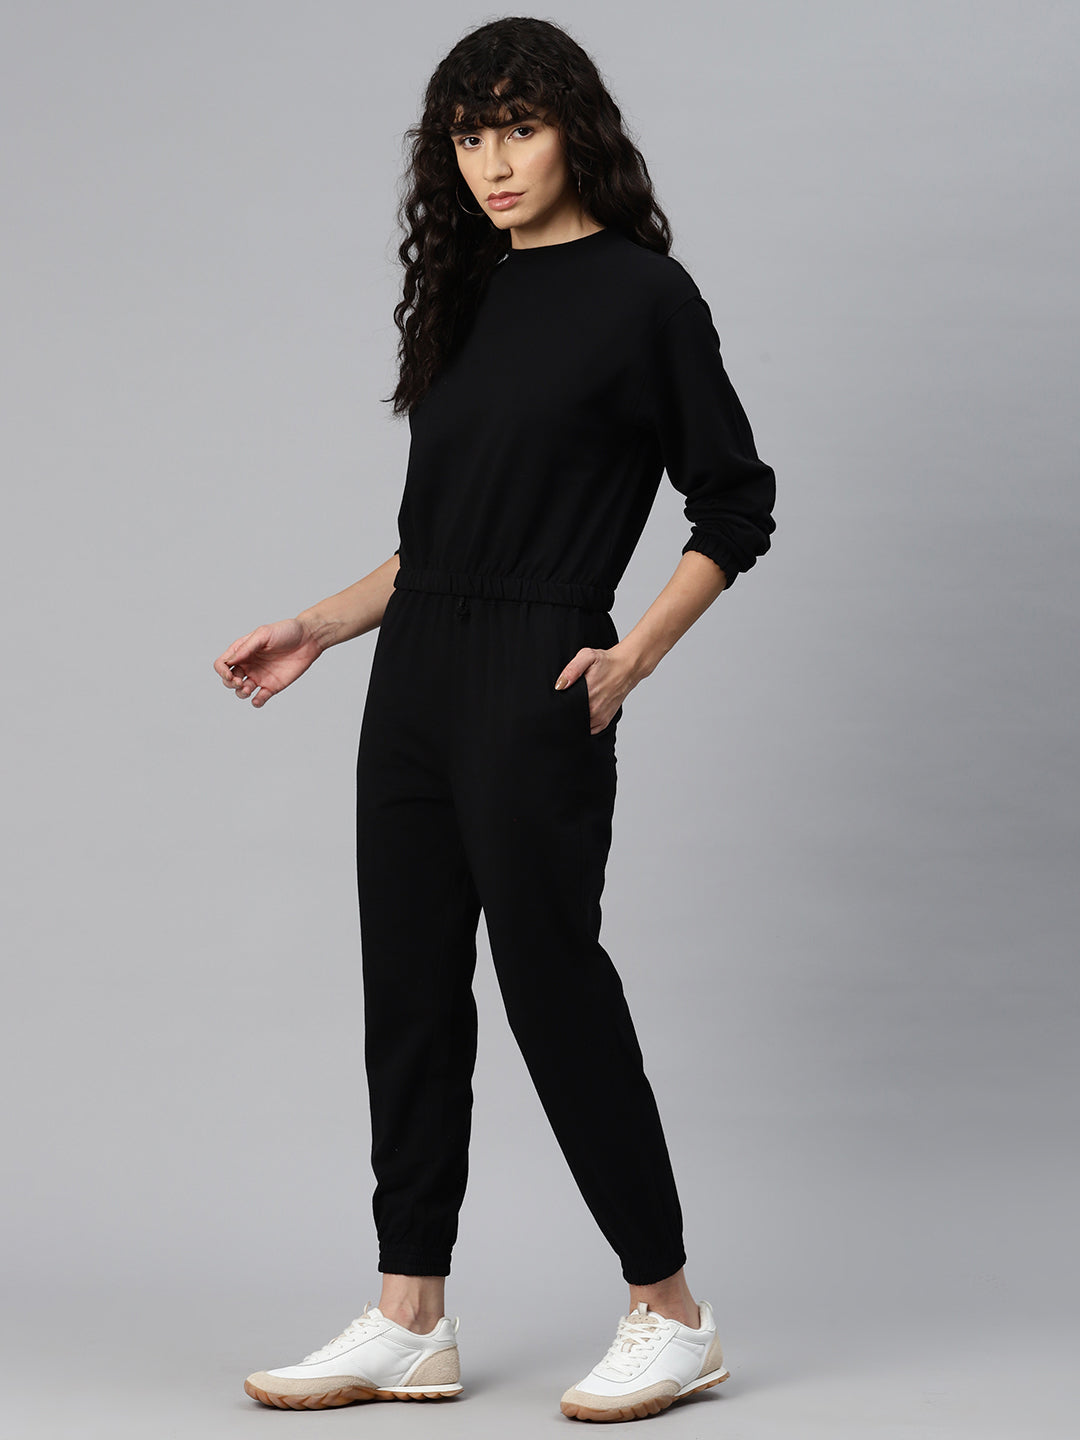 laabha solid black winter wear womens tracksuit – Laabha Athleisure